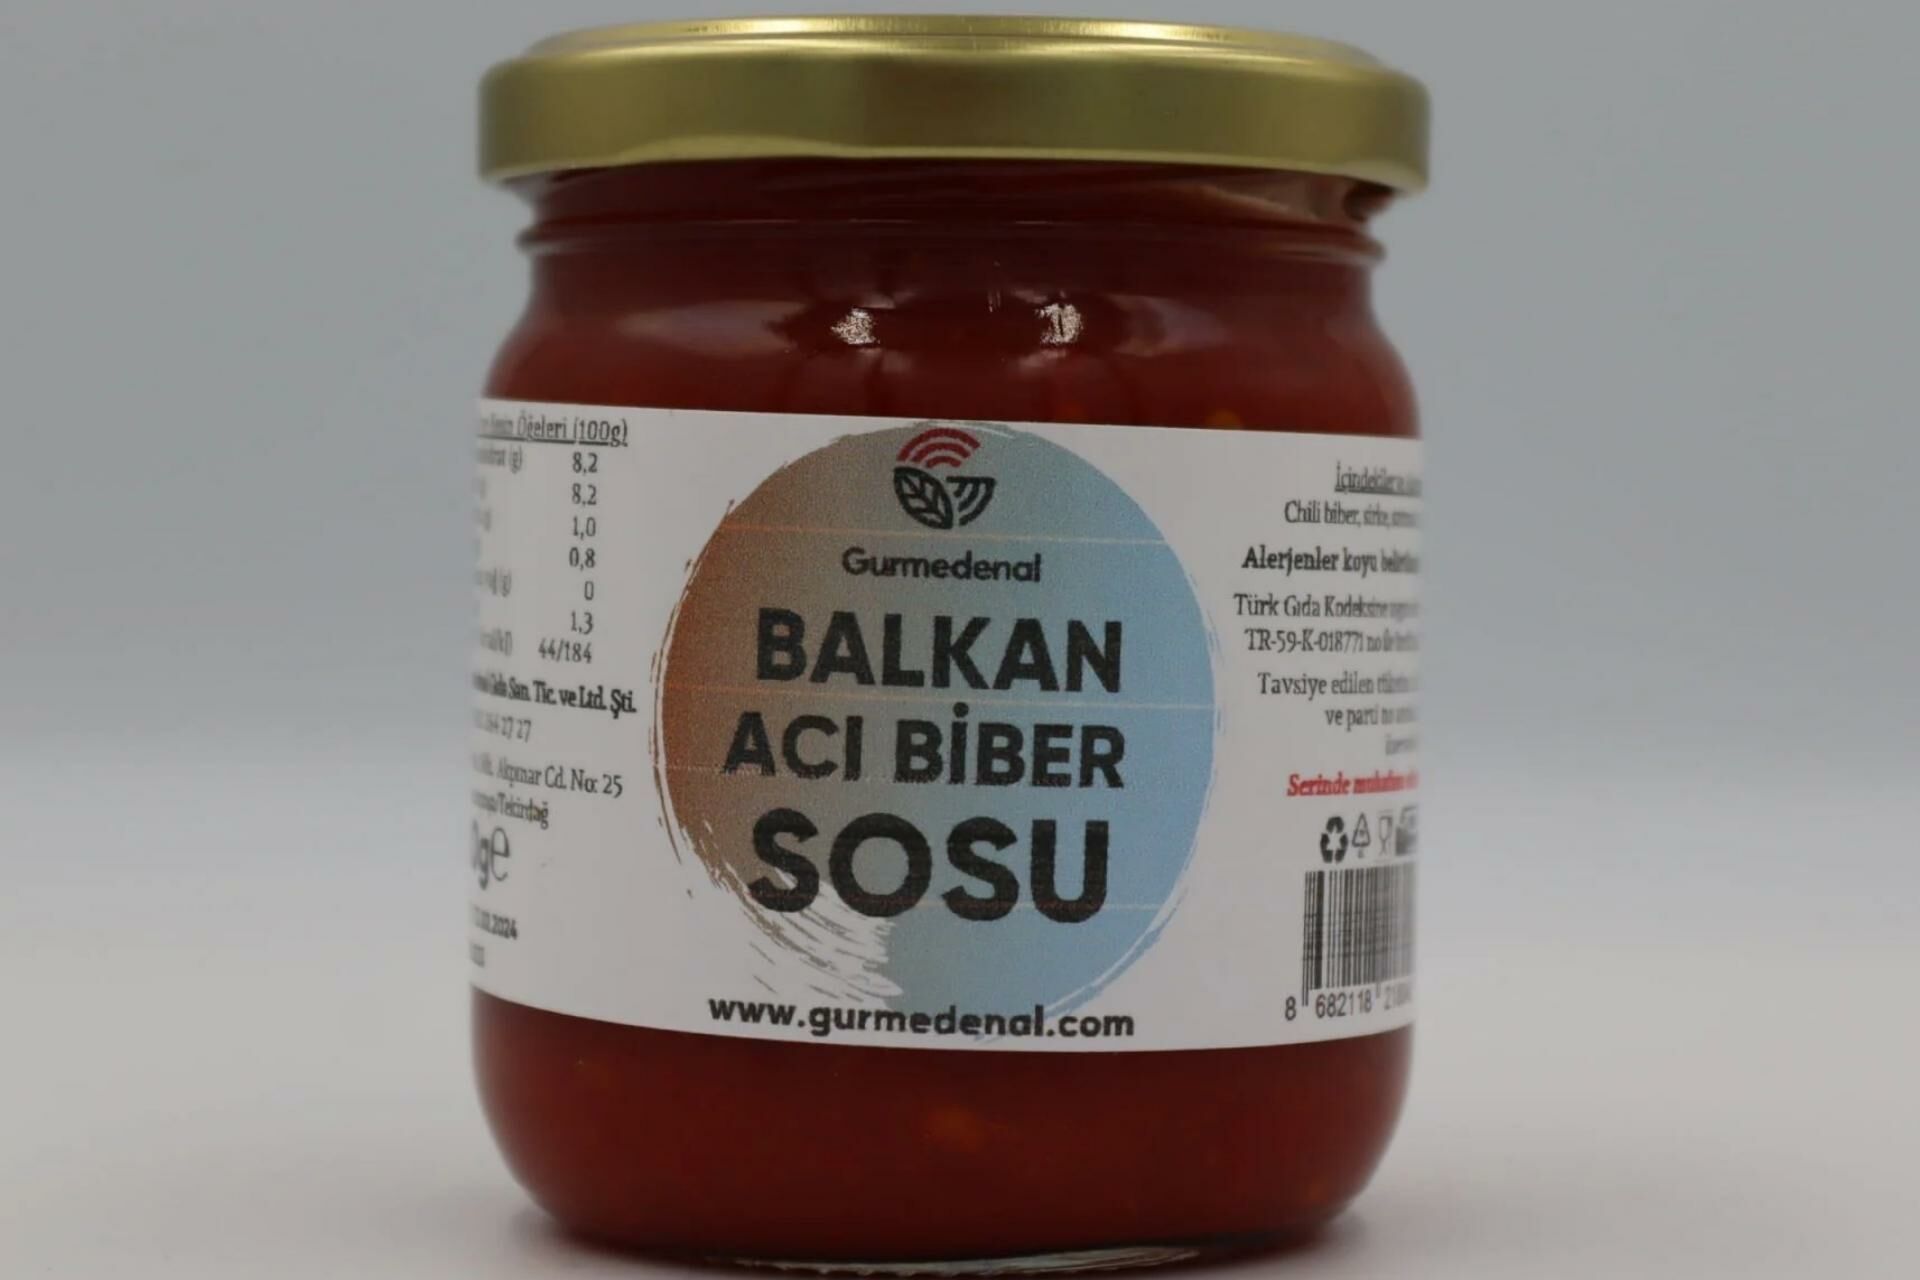 Balkan Acı Biber Sosu 180g